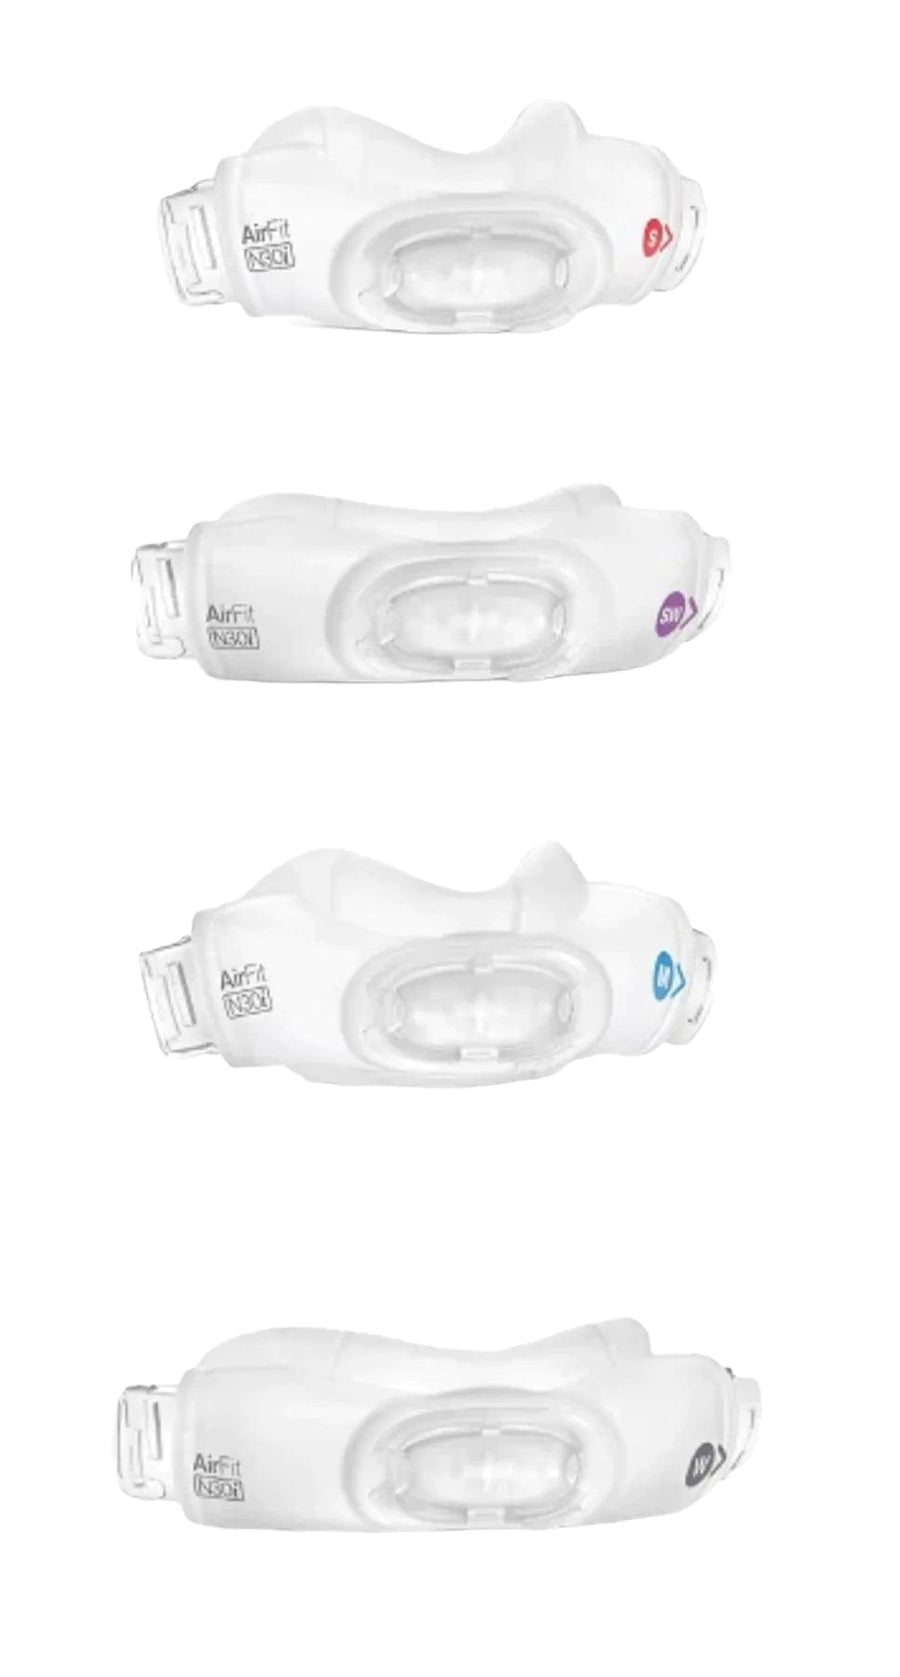 Airfit N30i Nasal Mask Cradle Cushion - SleepQuest Online Store